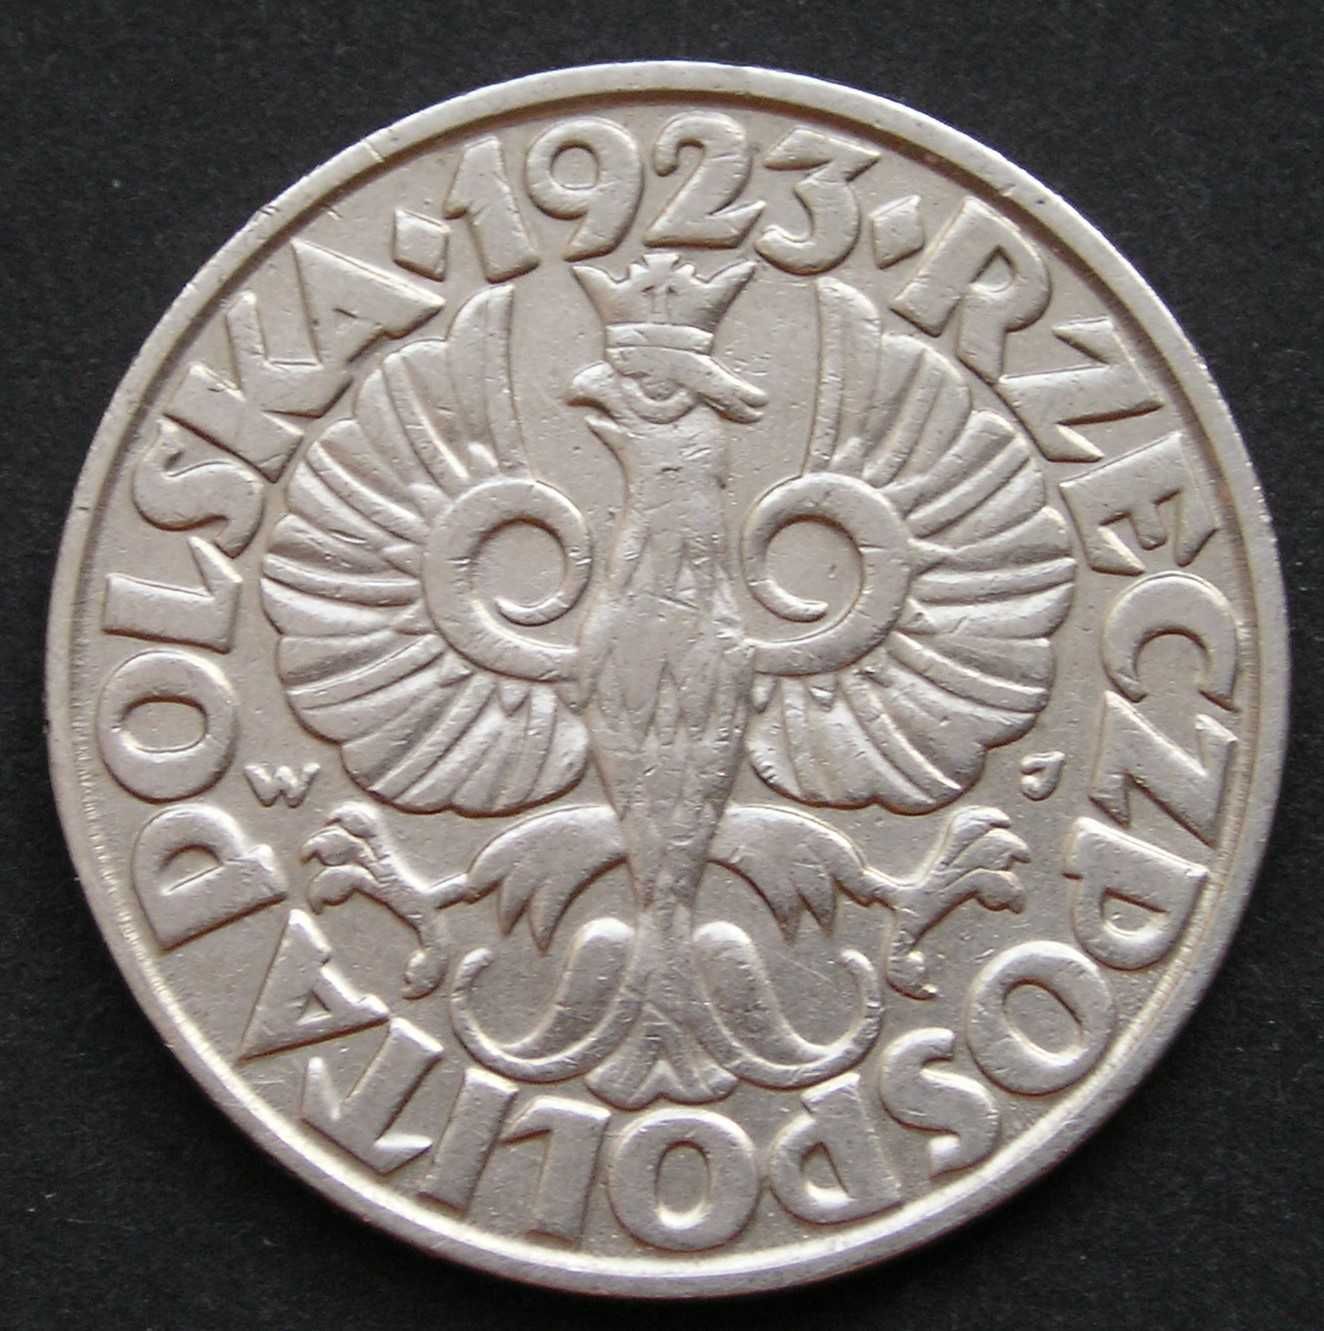 Polska 50 groszy 1923